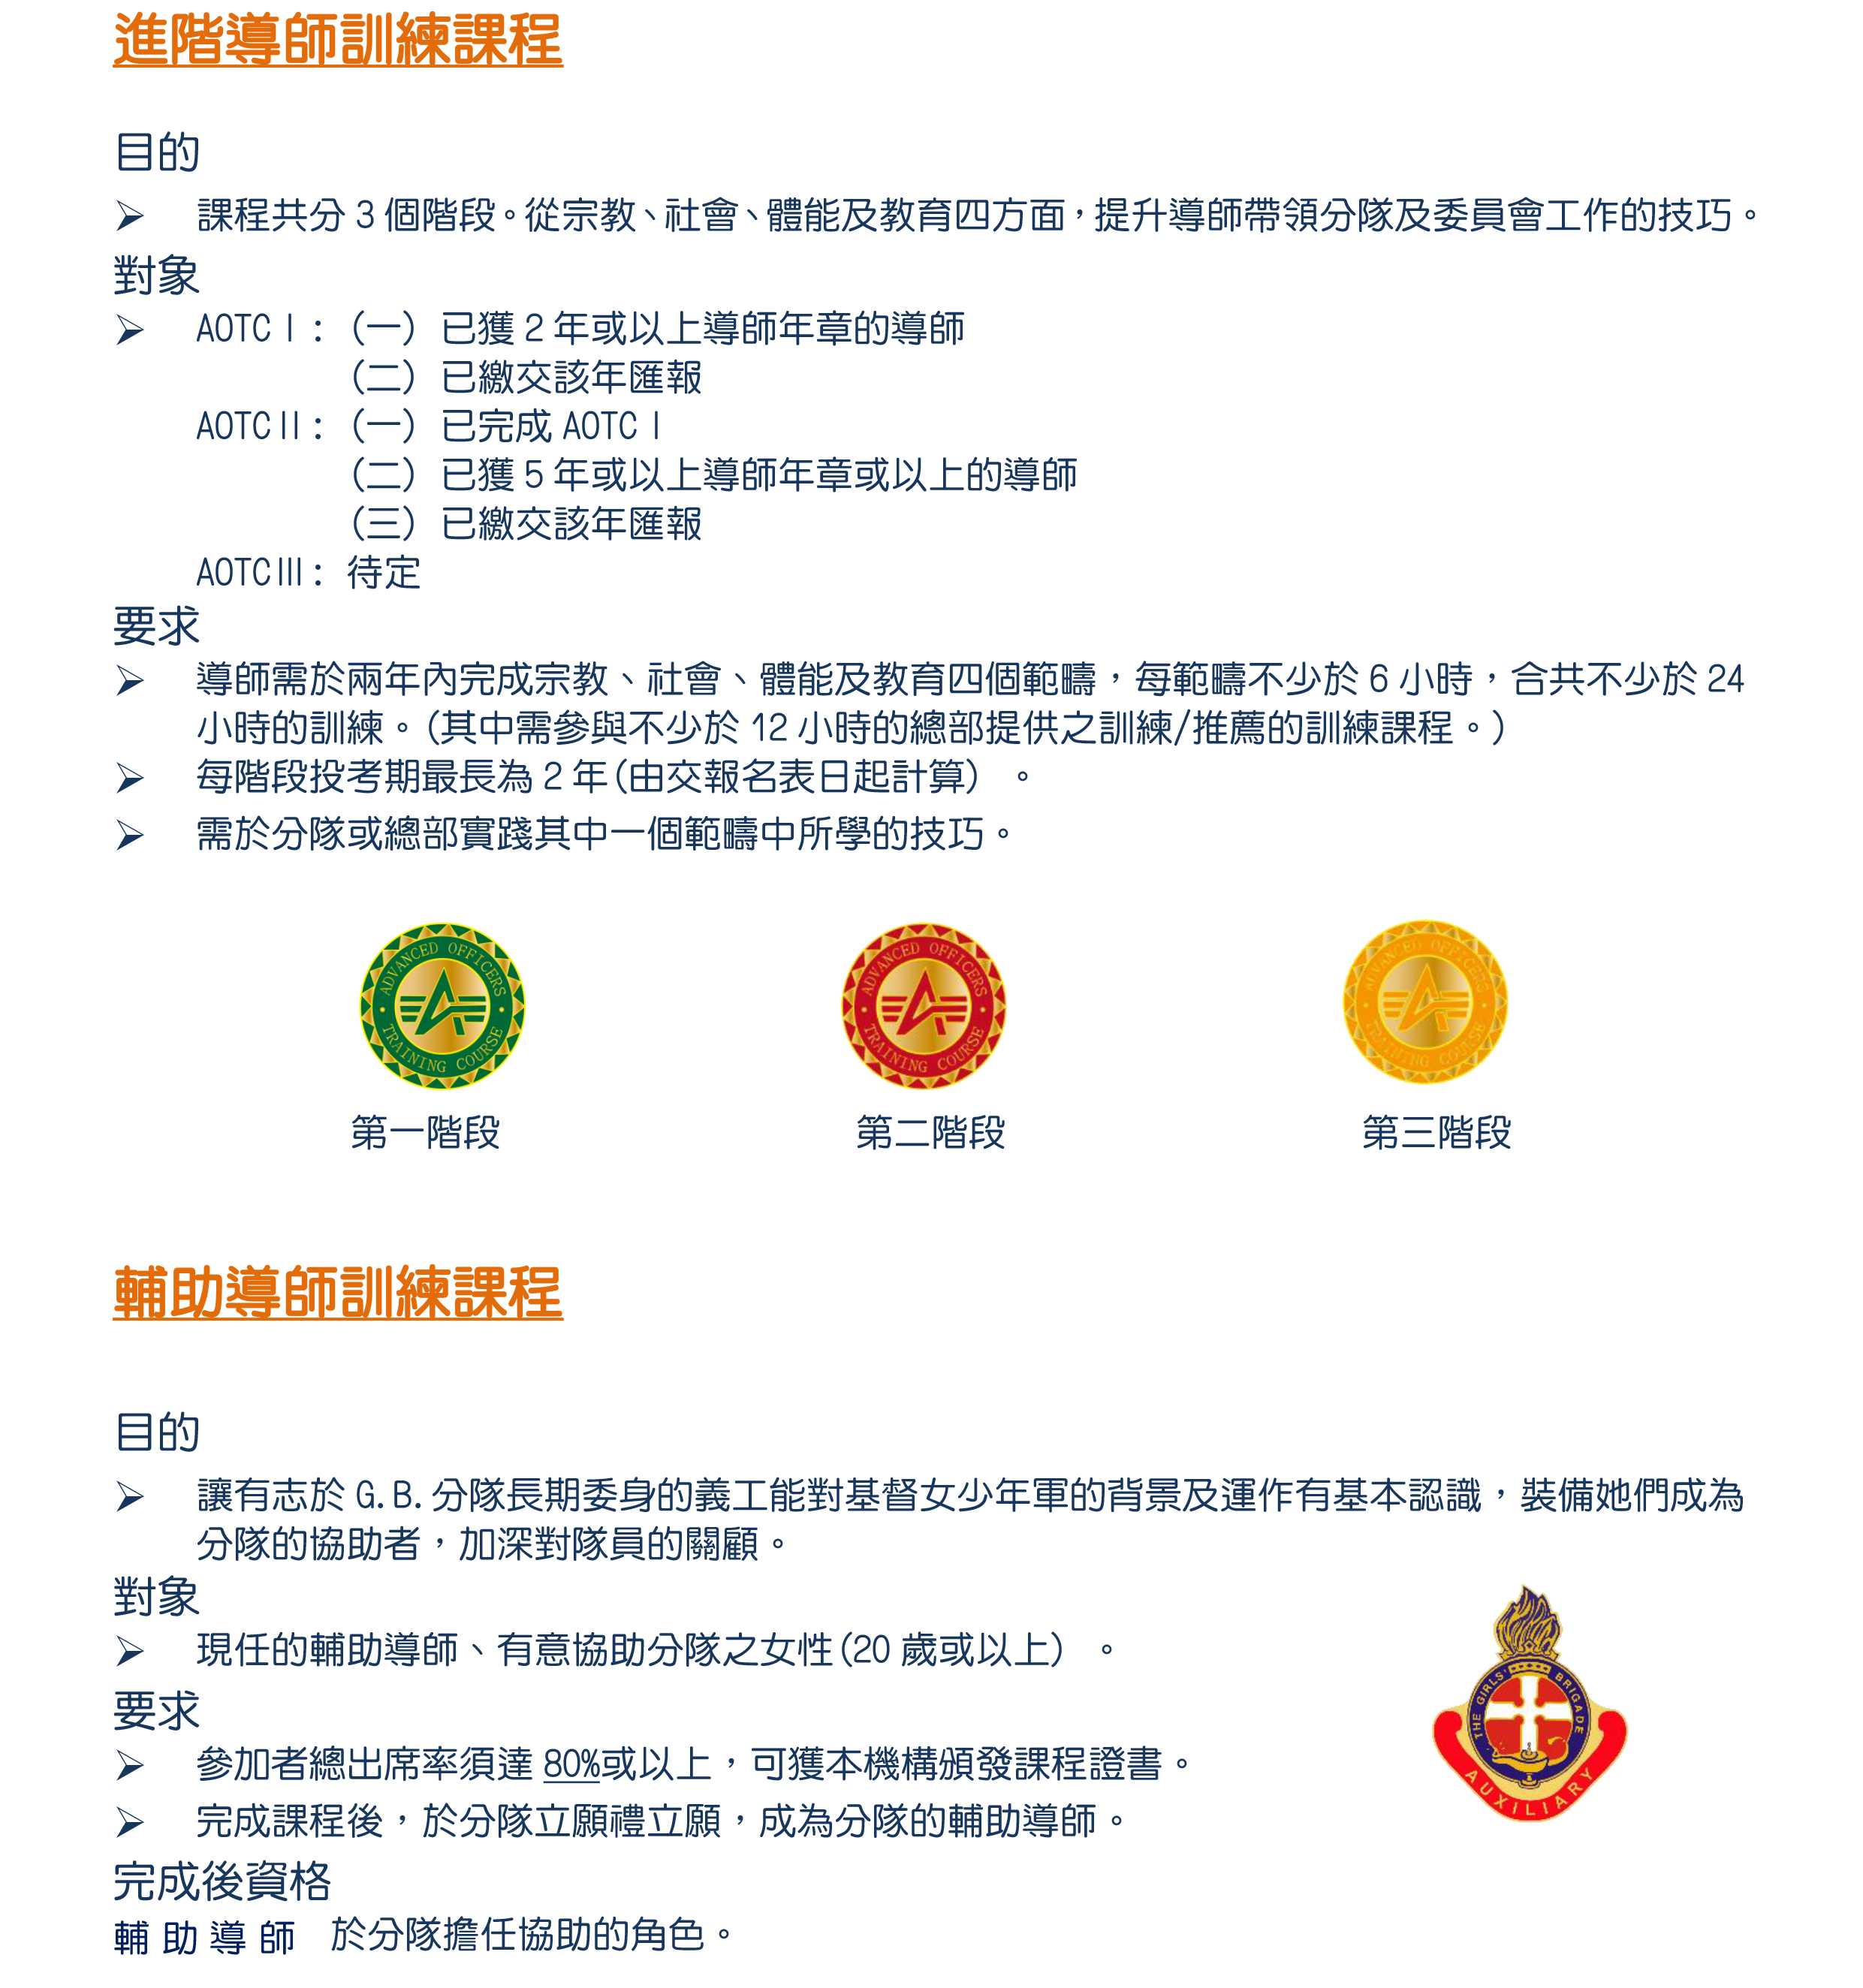 6- 獎章制度-AOTC(revised 2020829)